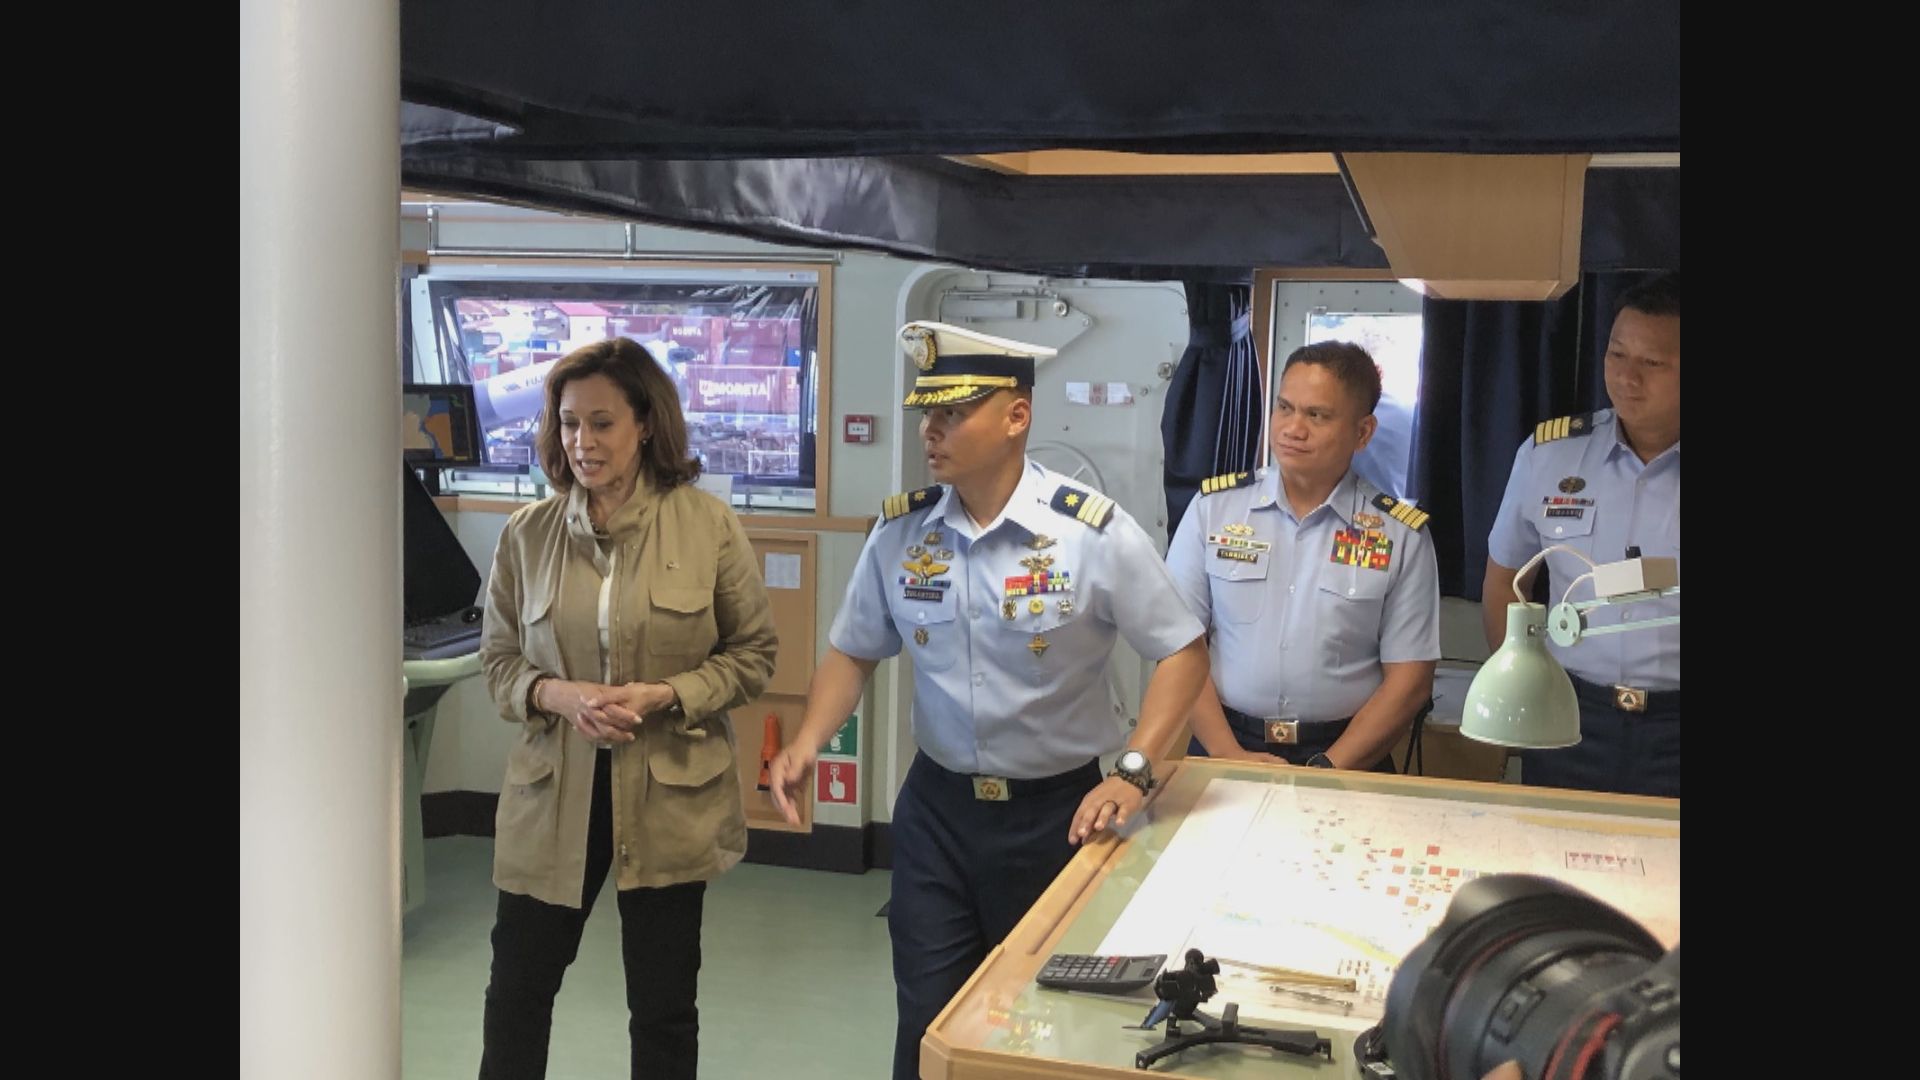 賀錦麗承諾美國會與菲律賓共同應對南海脅迫行為